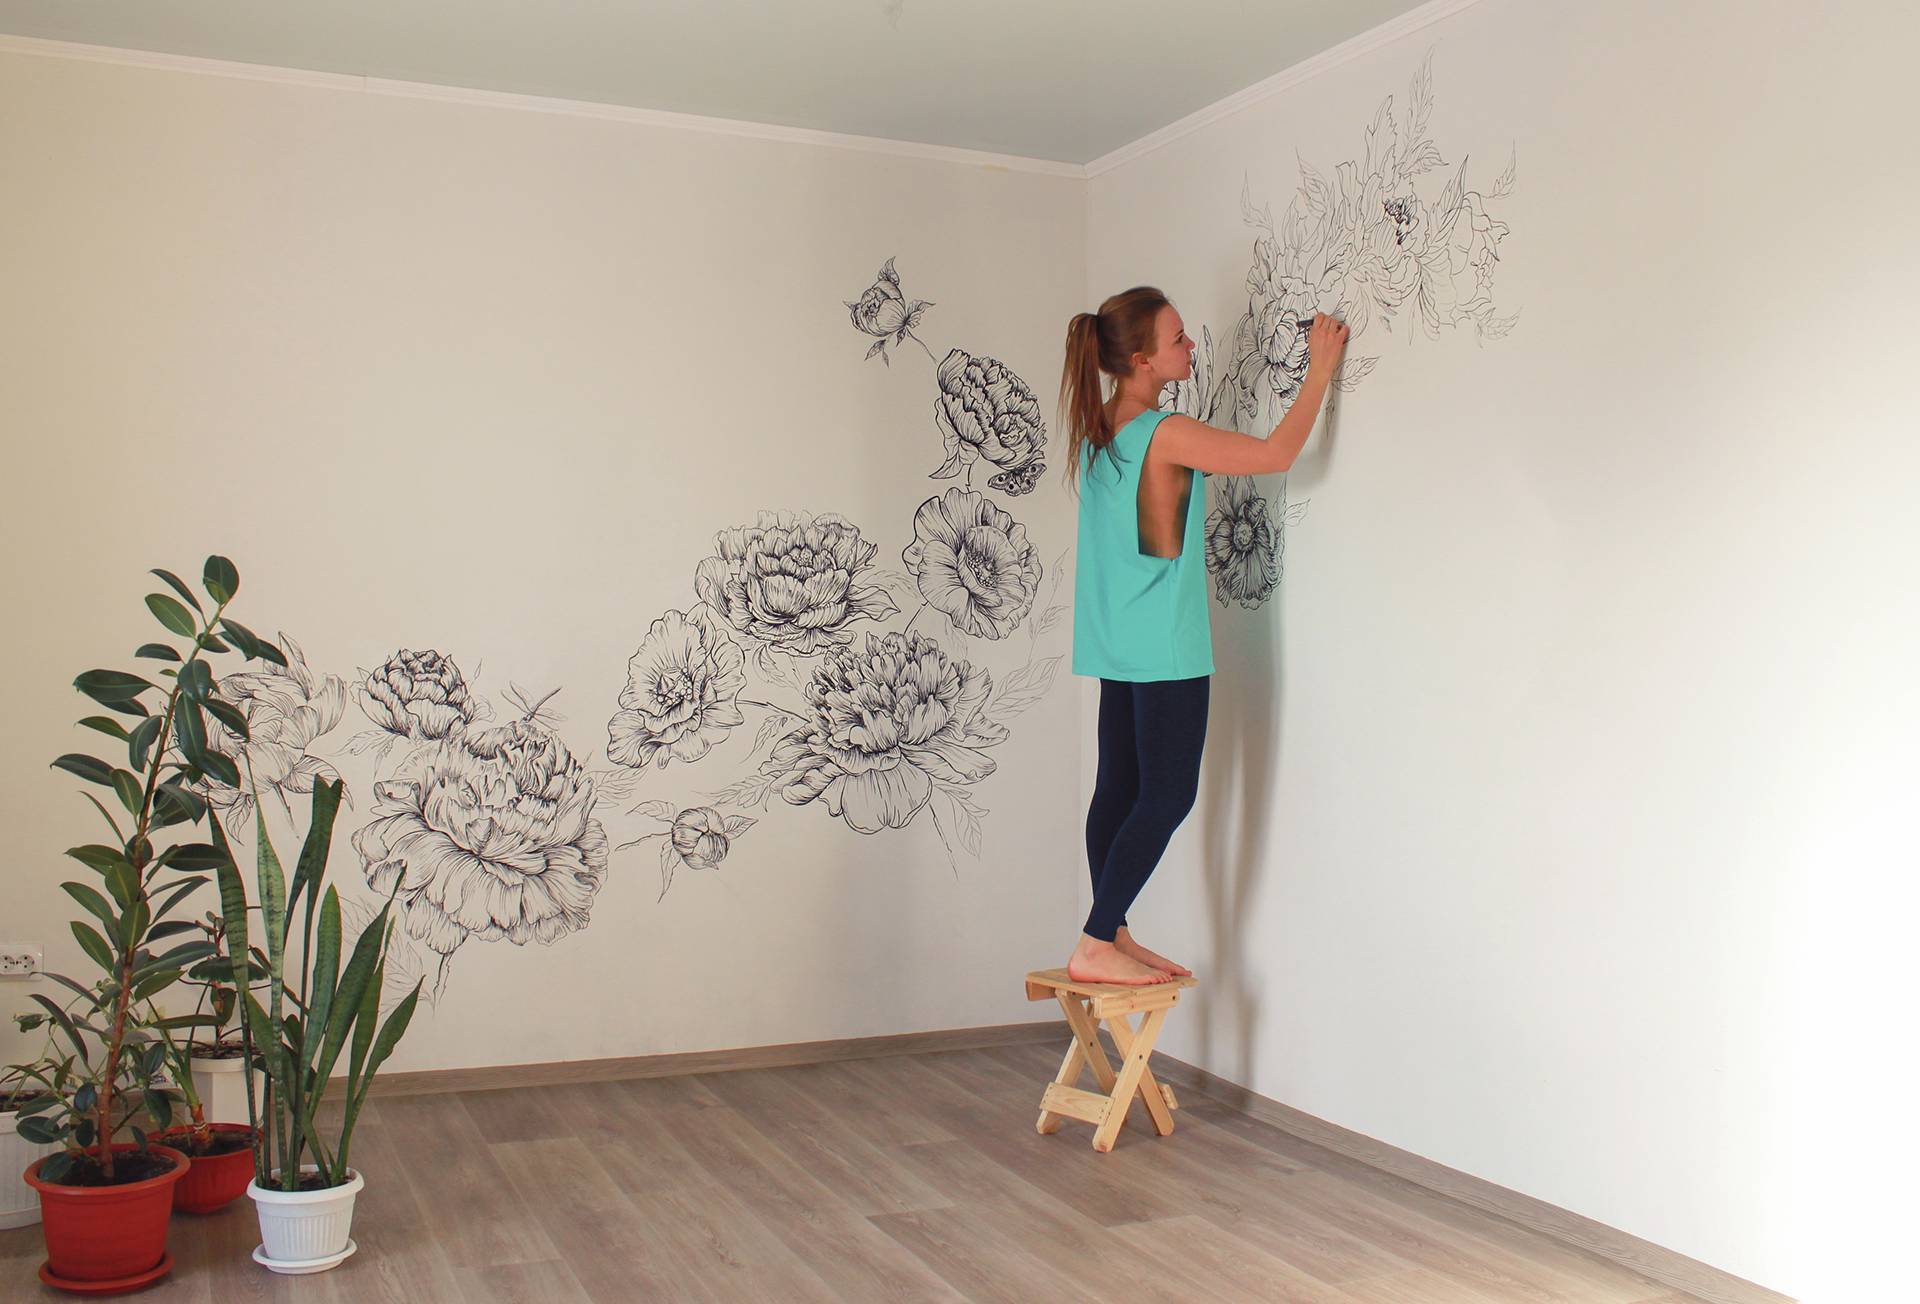 Мастер класс - трафаретная роспись стен своими руками фото и видео